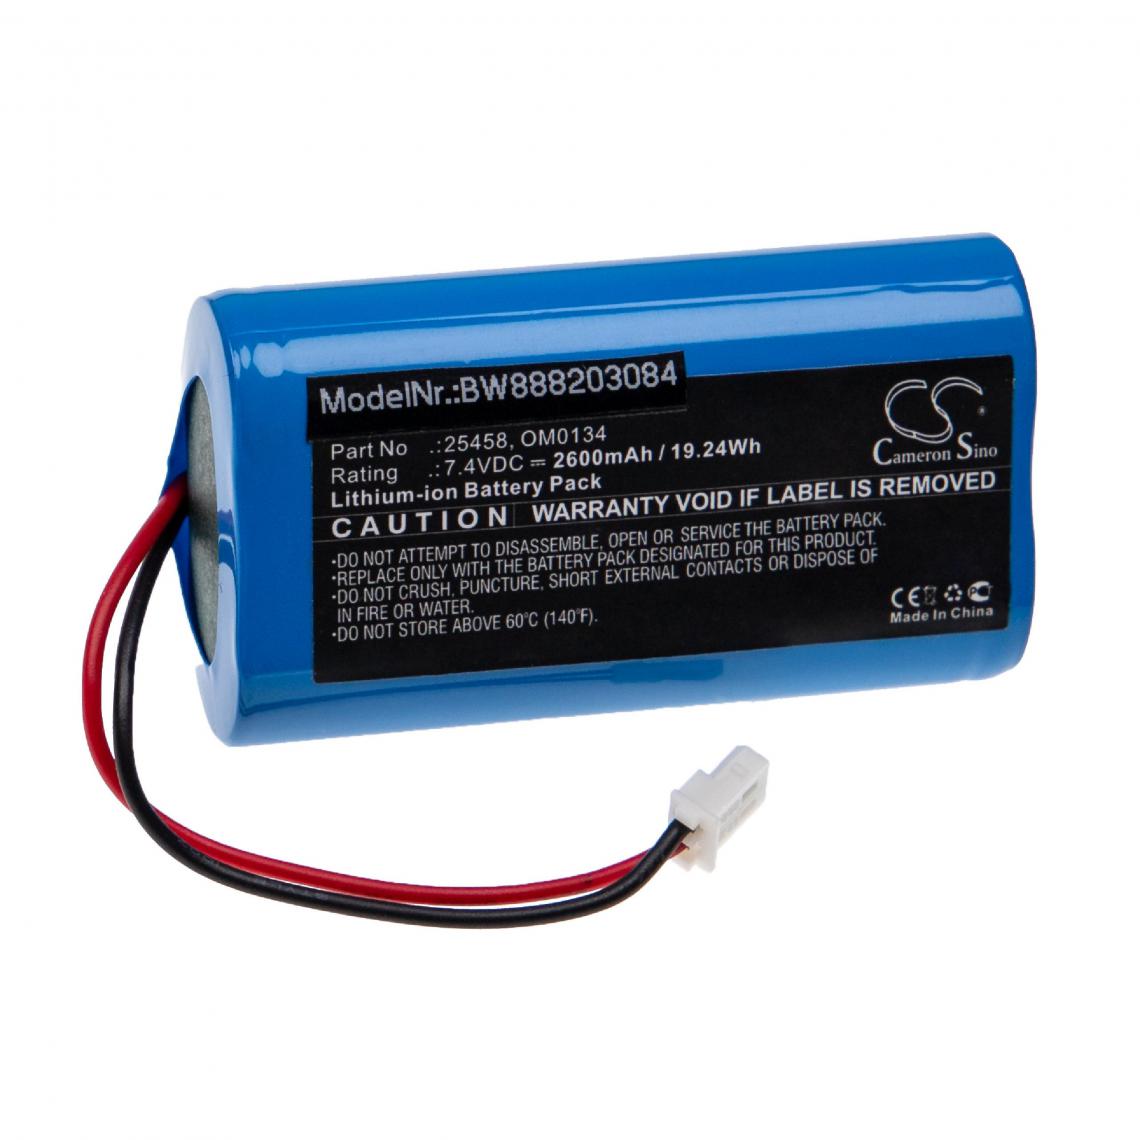 Vhbw - vhbw Batterie remplacement pour SurgiTel 25458, OM0134 pour appareil médical (2600mAh, 7,4V, Li-ion) - Piles spécifiques